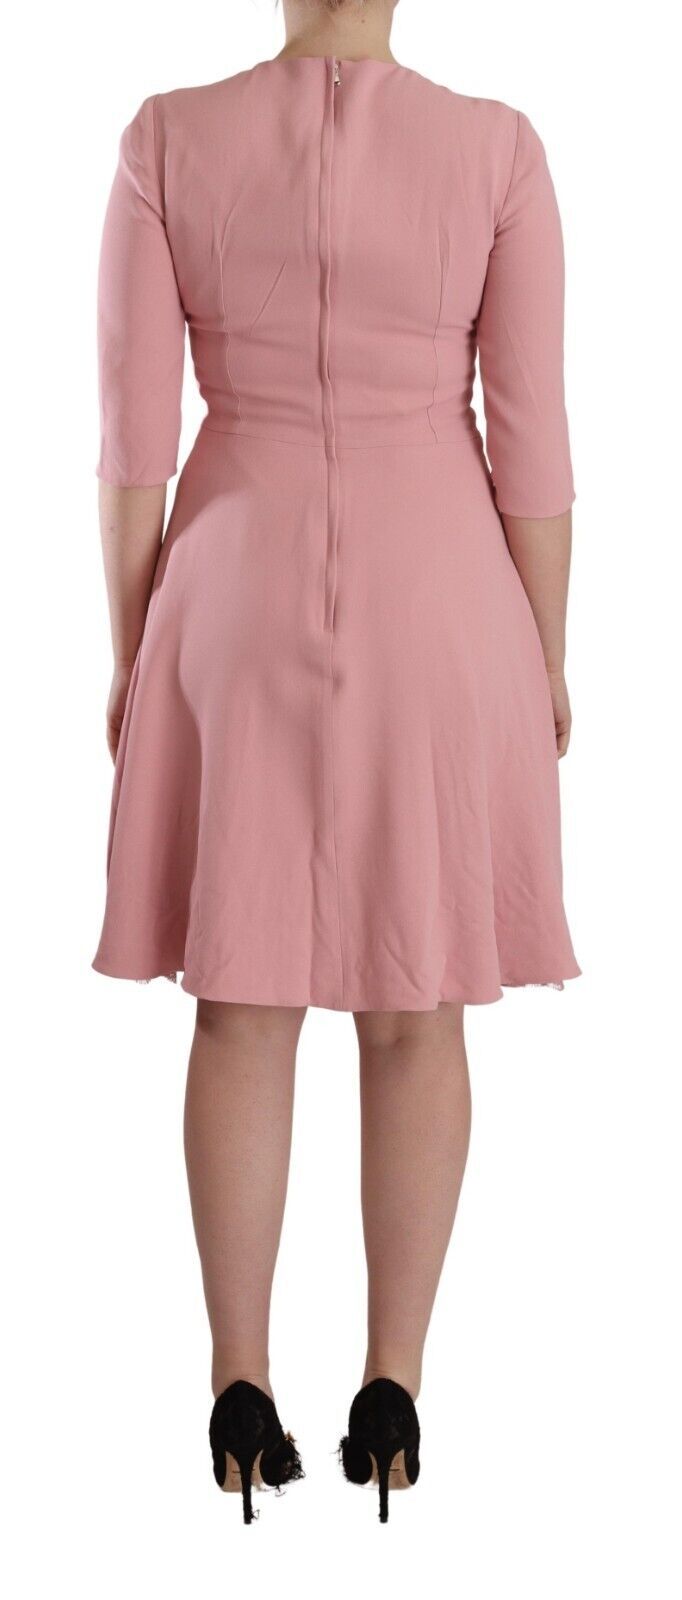 Dolce & Gabbana Pink 3/4 Sleeves Viscose Blend A-line Women's Dress